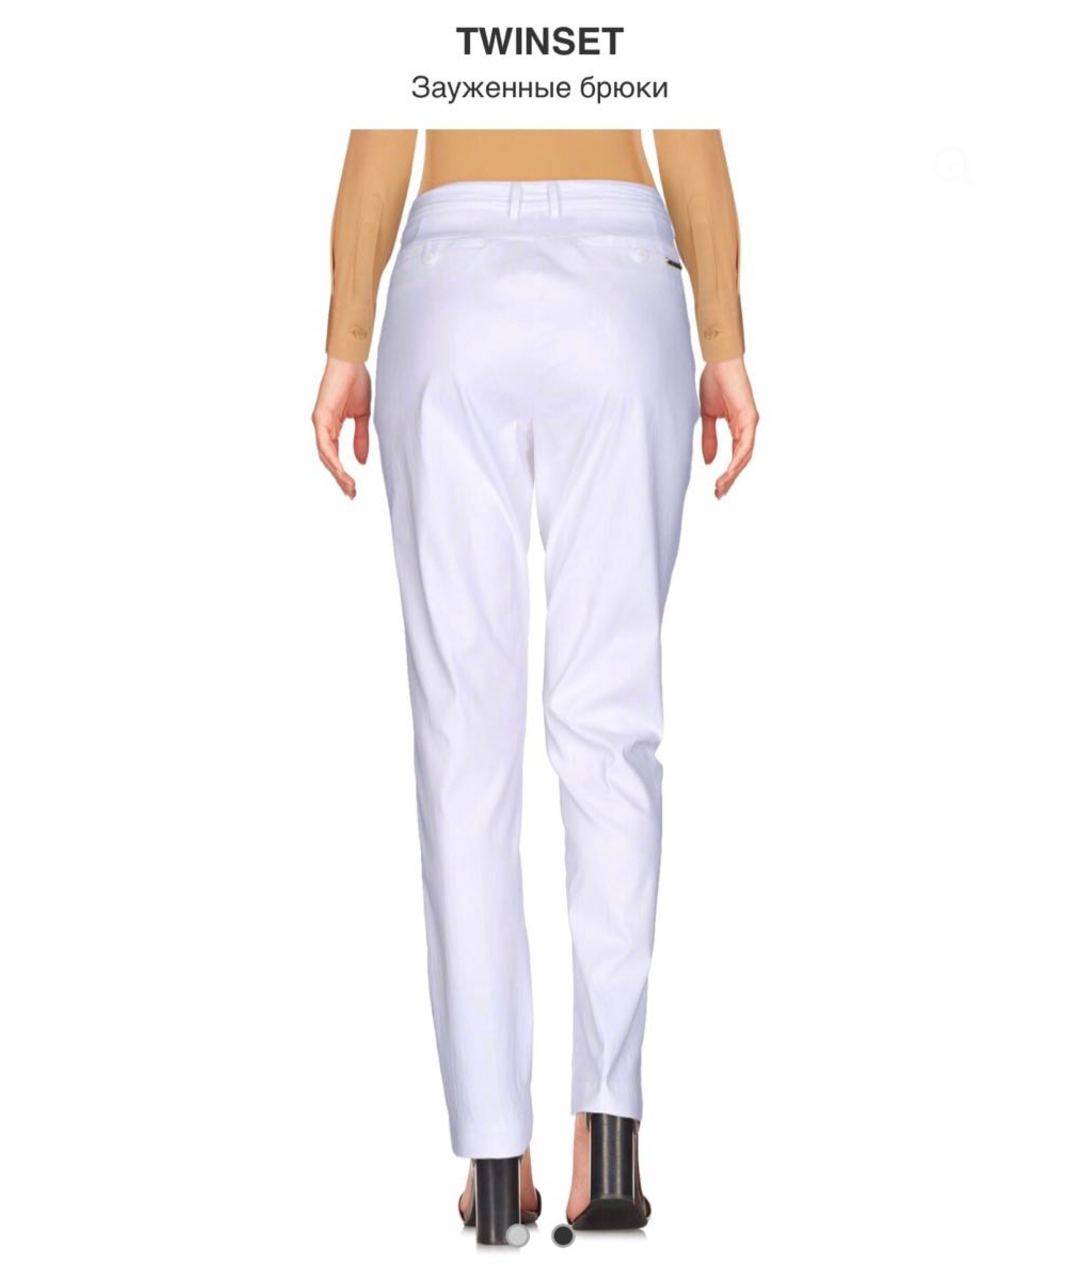 TWIN-SET Белые вискозные брюки узкие, фото 2